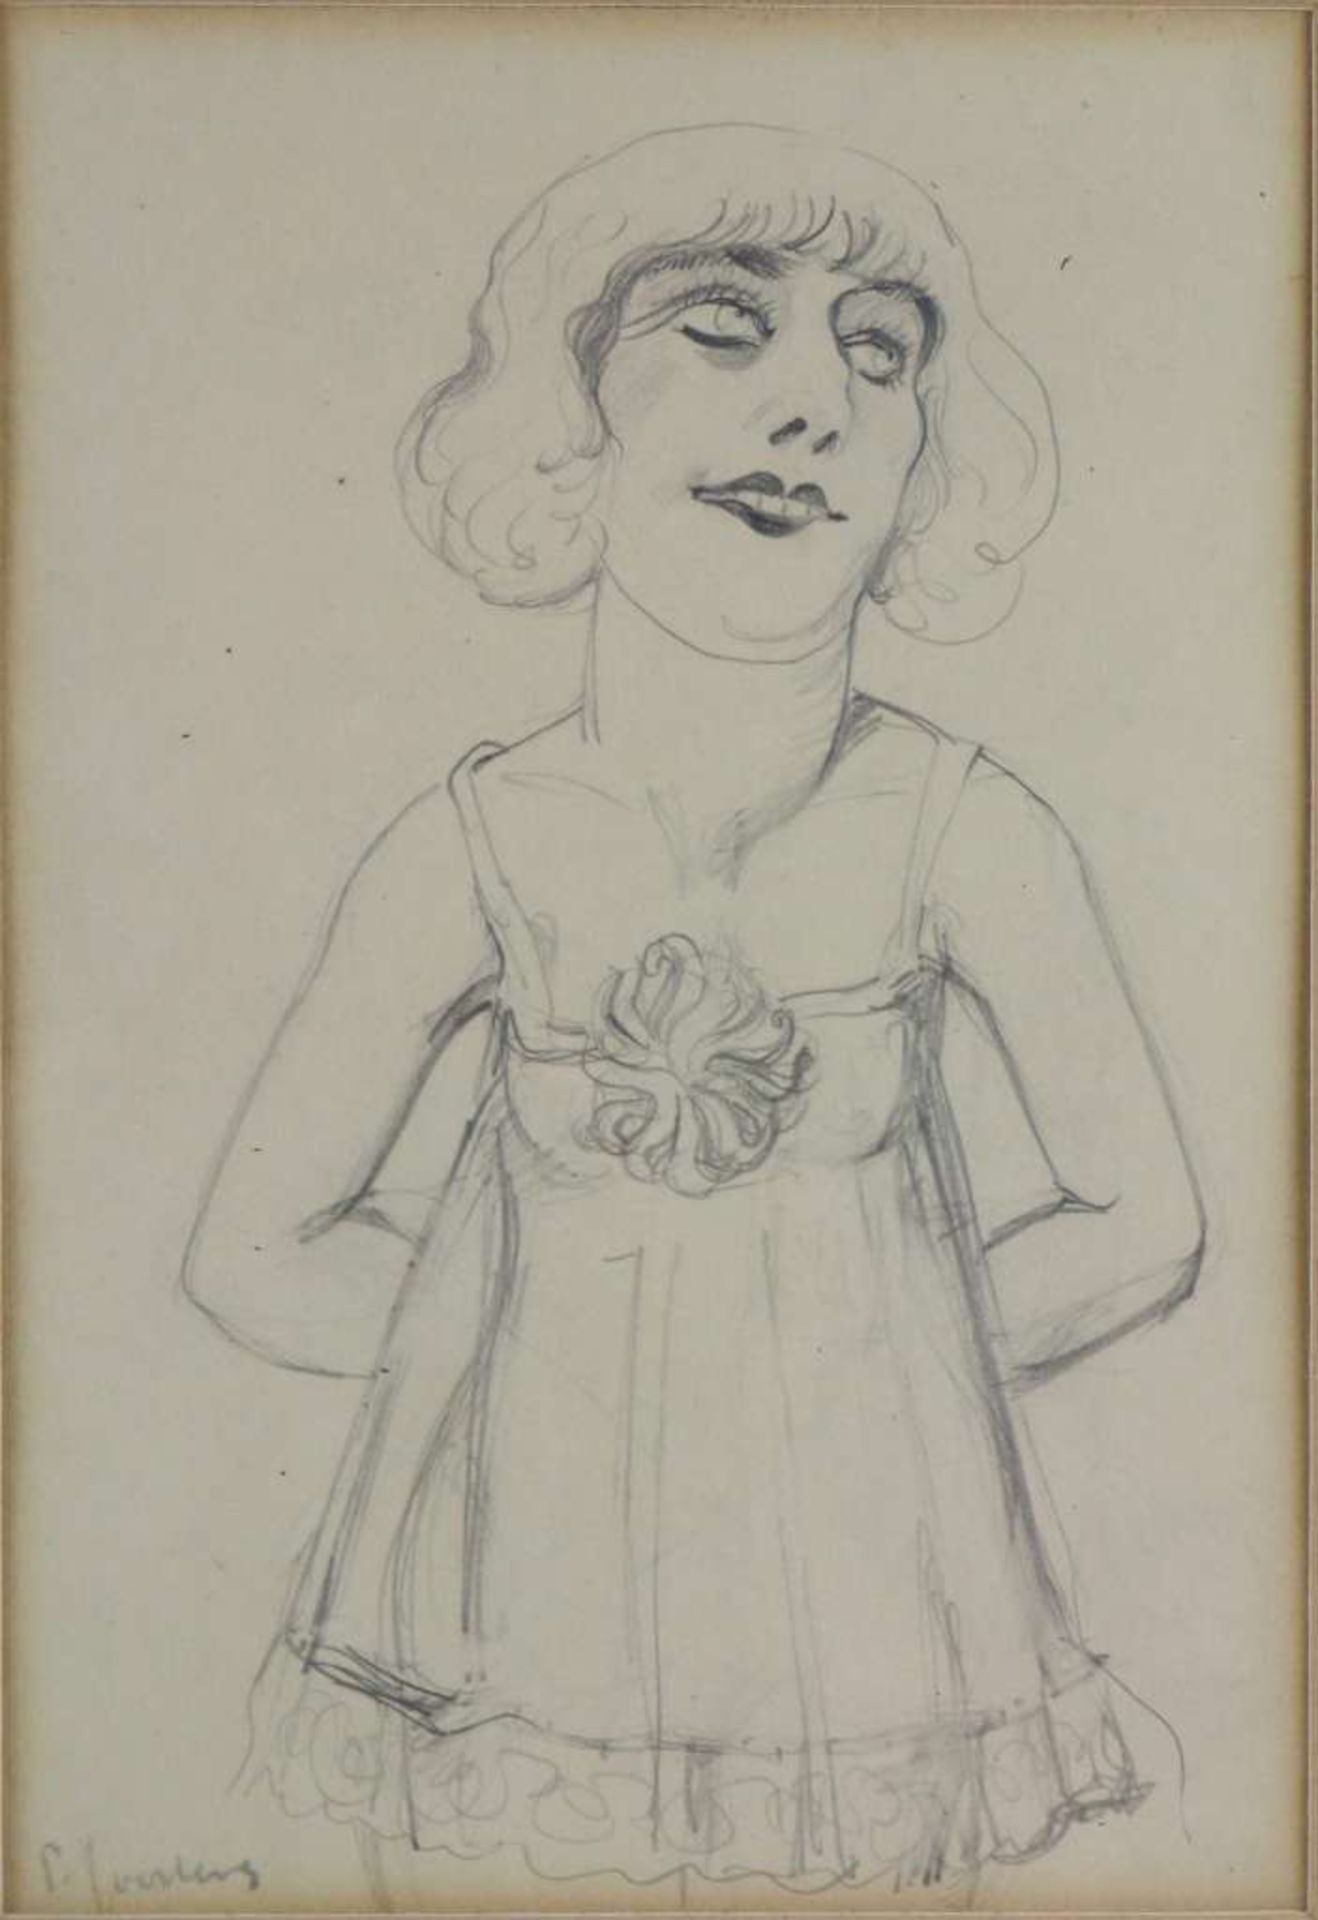 Paul JOOSTENS (1889-1960), Zeichnung, "Femme", ca. 1925, signiert. Maße: 24,4 x 17,2 cm.